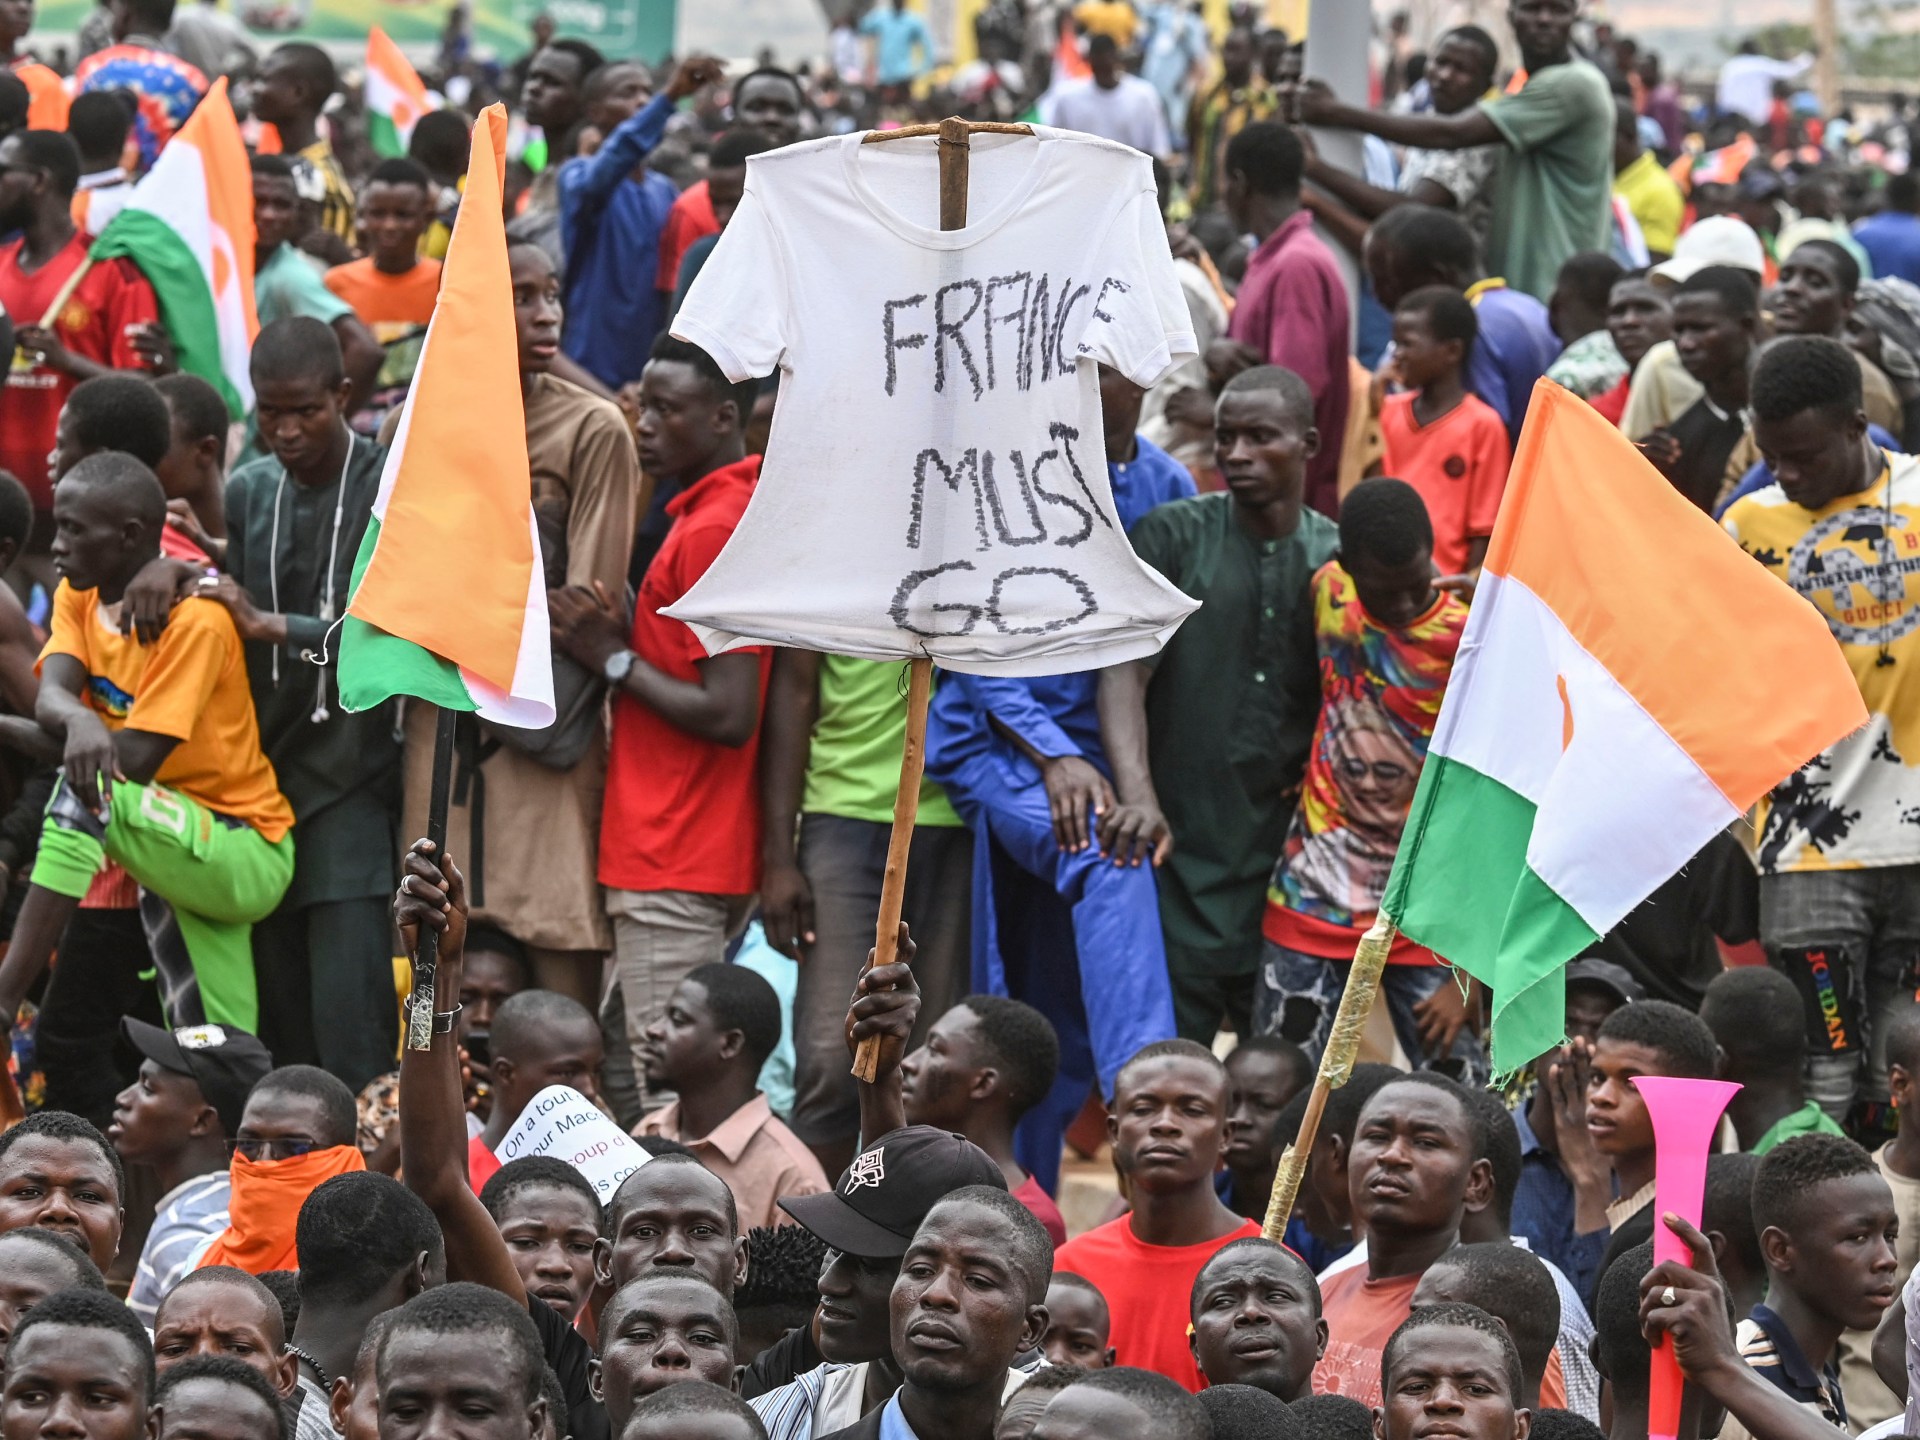 Прихильники нігерського перевороту вимагають, щоб французький посол і війська покинули країну  Новини протесту